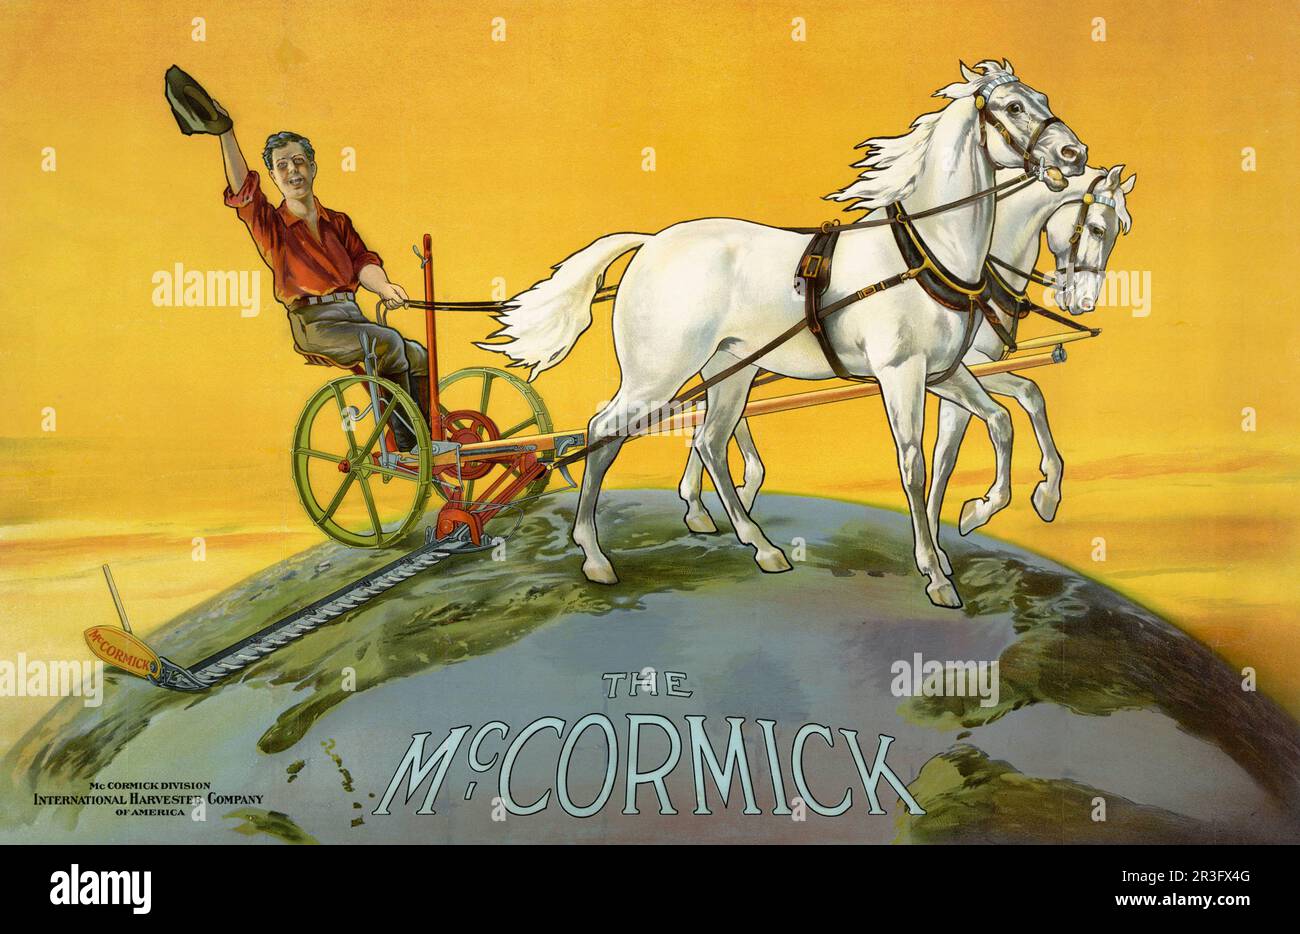 Publicité vintage d'un agriculteur exploitant des machines agricoles pour la division McCormick de l'International Harvester Company. Banque D'Images